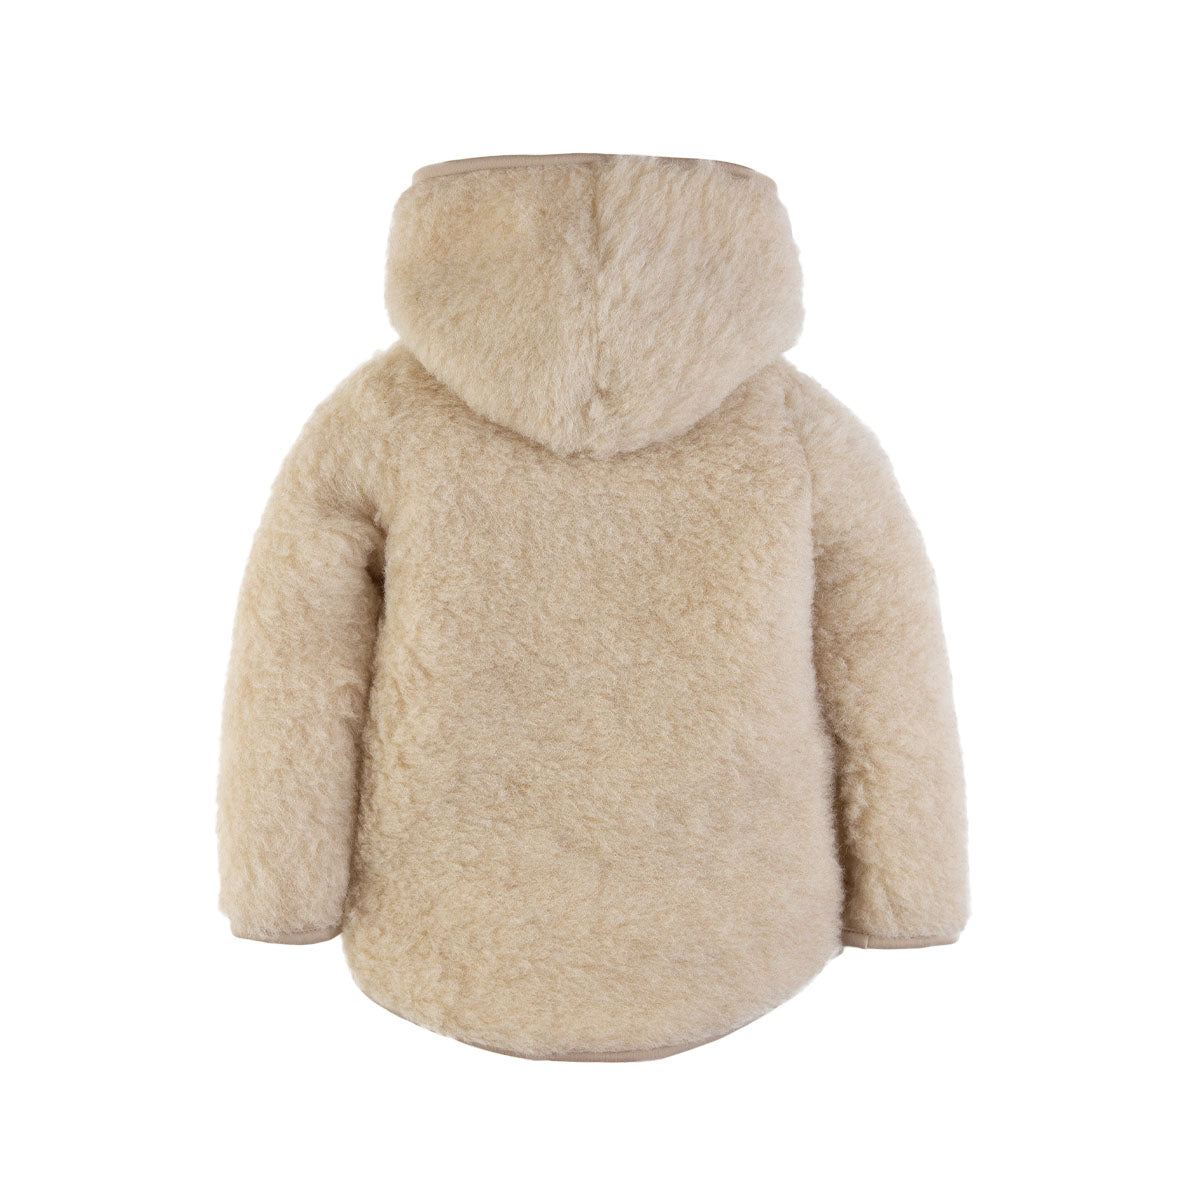 De Alwero mody jas beige is een perfect tussenjasje. Deze jas is gemaakt van 100% wol en daardoor heerlijk warm en zacht. Perfect voor in de herfst of lente, of op warmere winterdagen met een dikke trui eronder. VanZus.